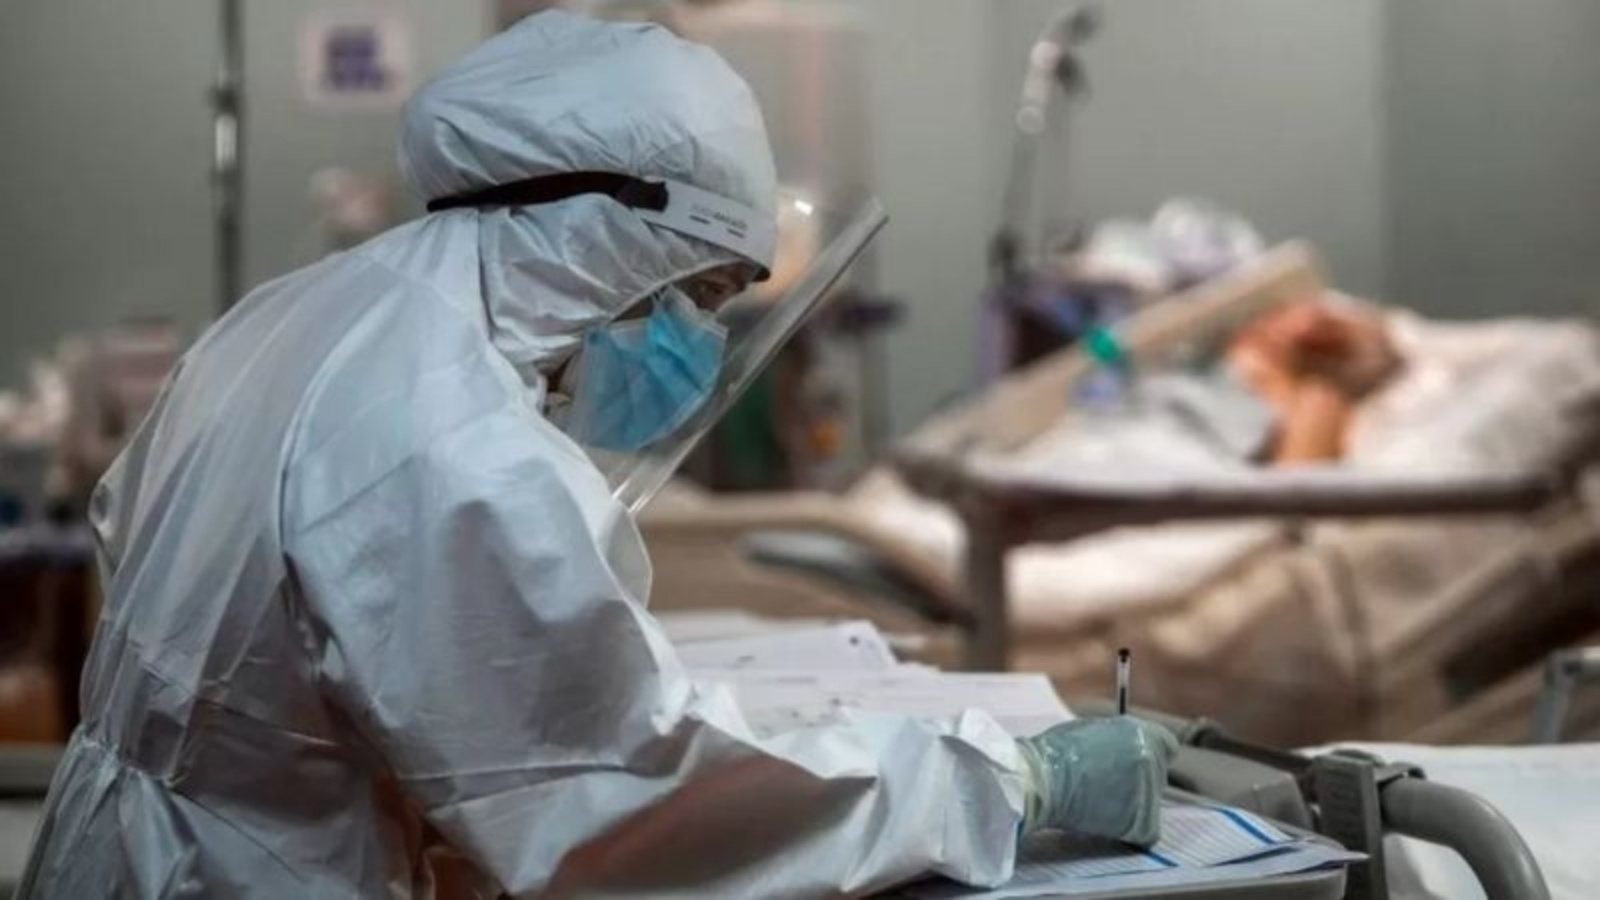 ممرضة تدوّن ملاحظات عن حالة مريض بكوفيد في مستشفى بإيطاليا في نوفمبر 2020